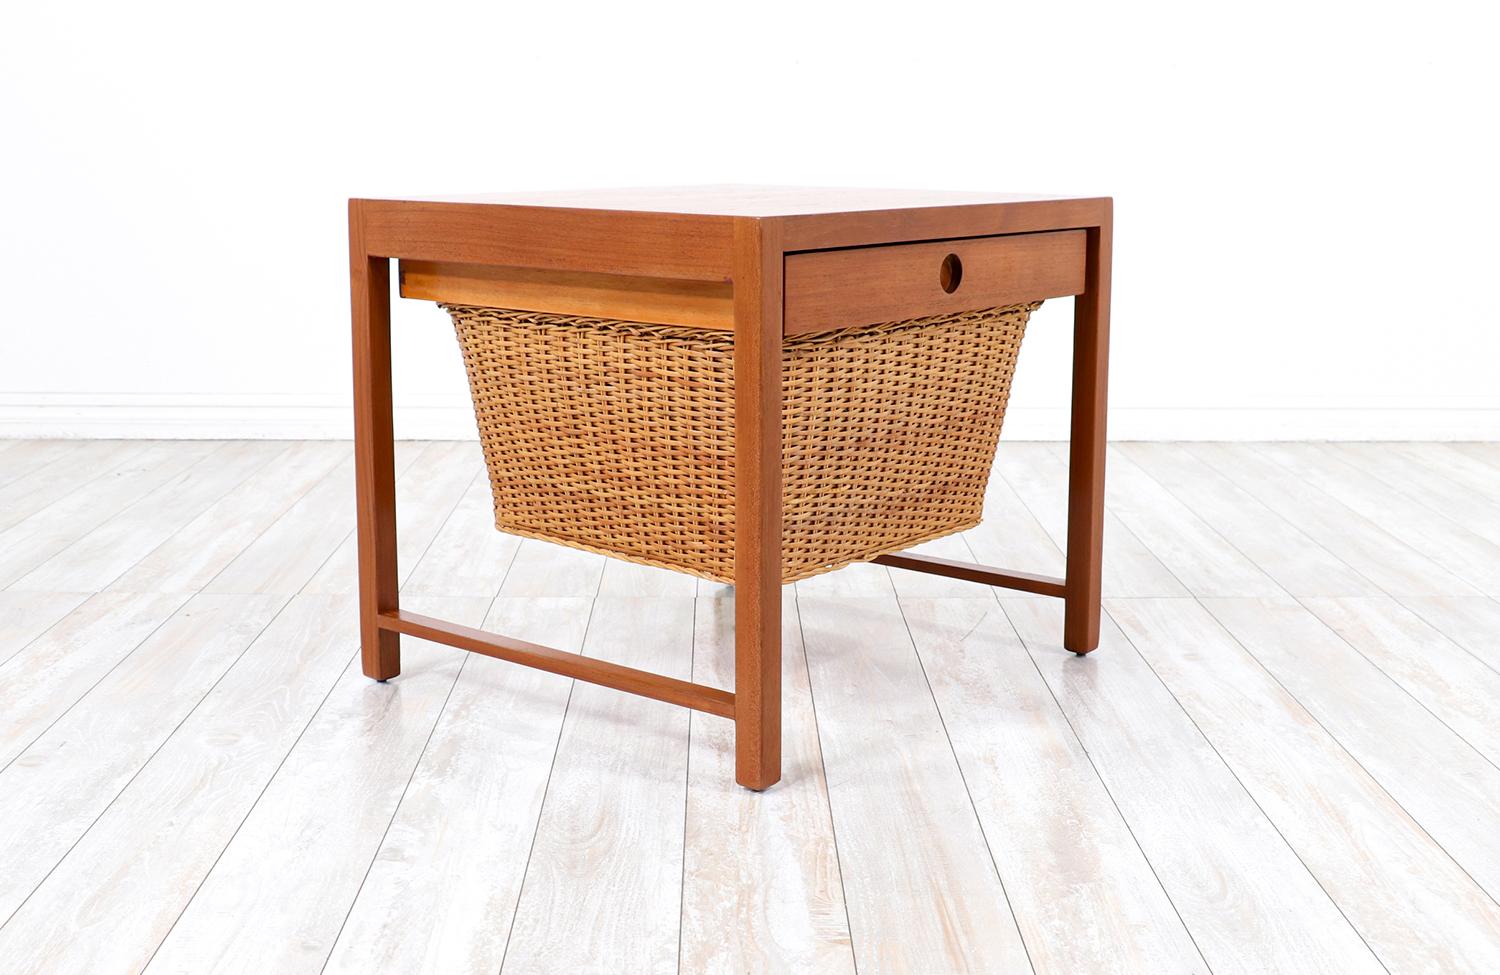 Danish Modern Teak Sewing Side Table with Wicker Basket 1